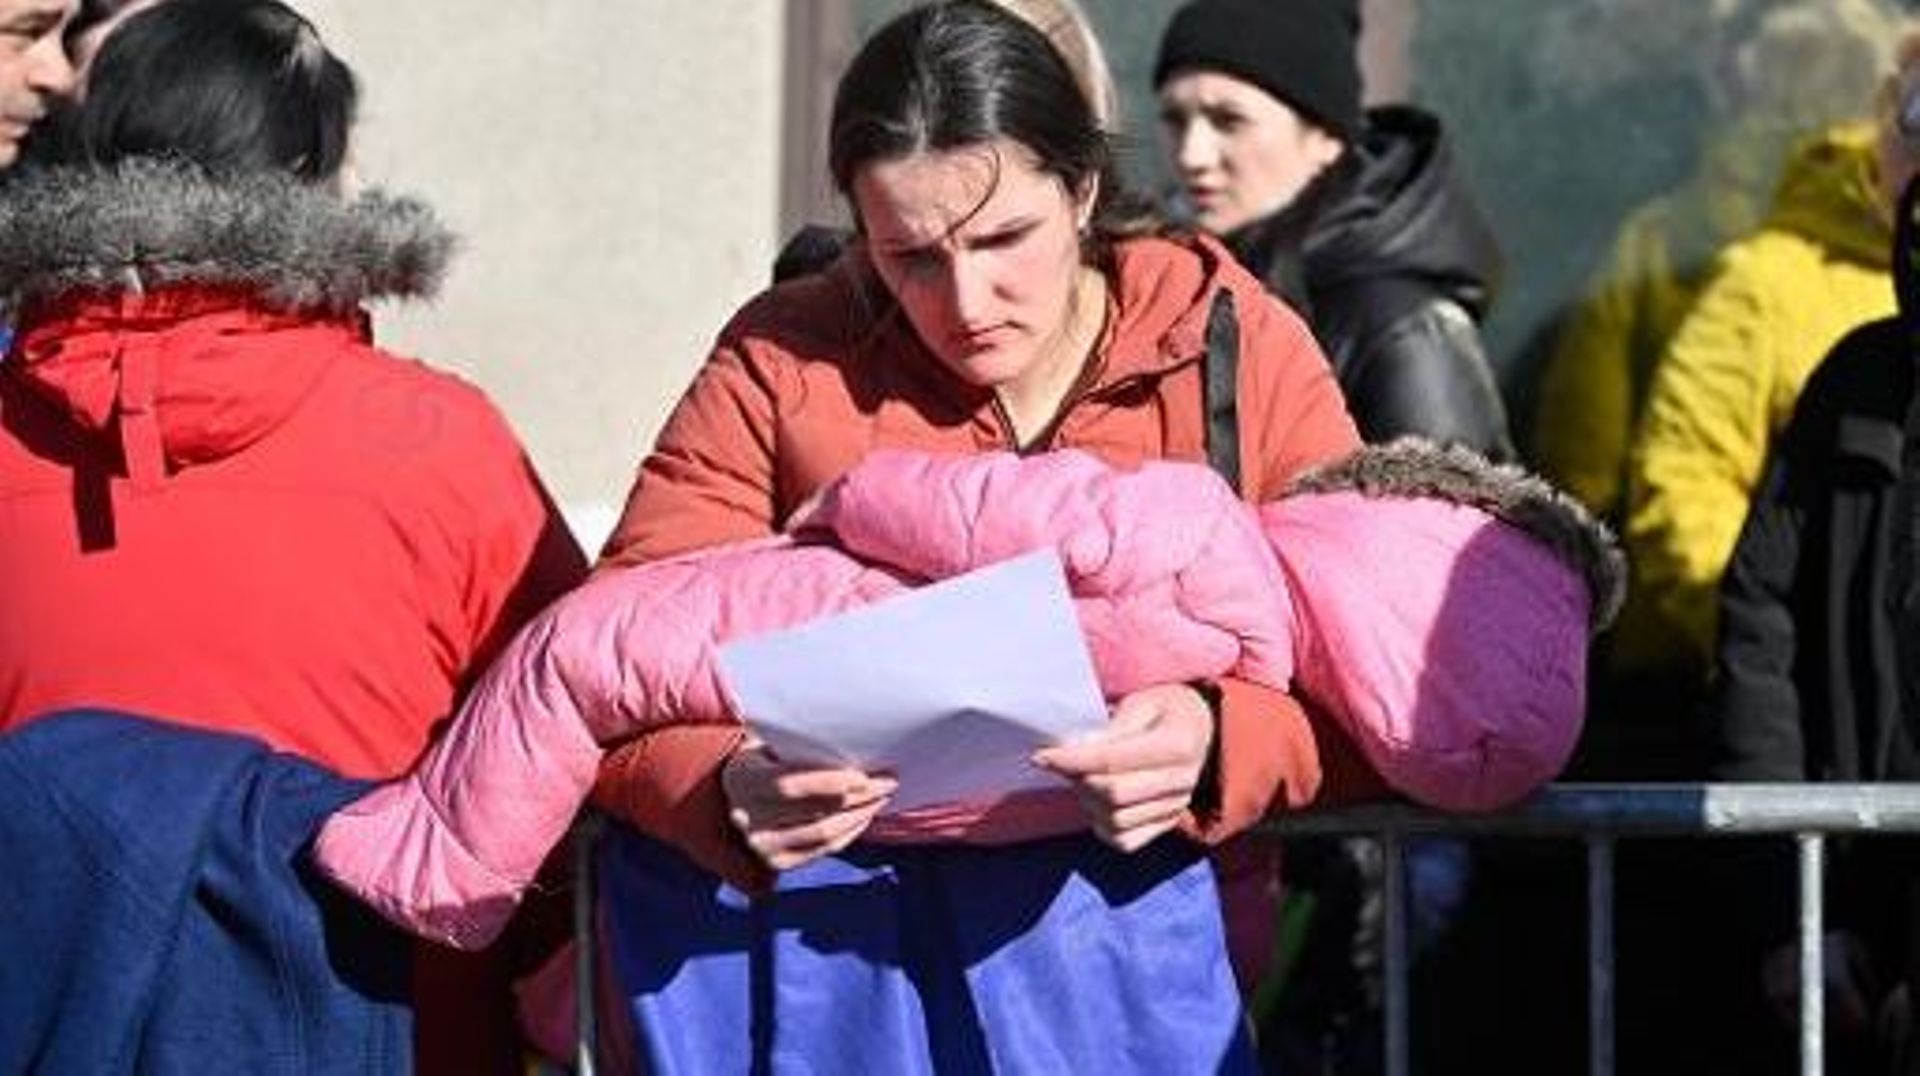 Un millier d’exilés ukrainiens font encore la file devant l’ex-hôpital Bordet à Bruxelles